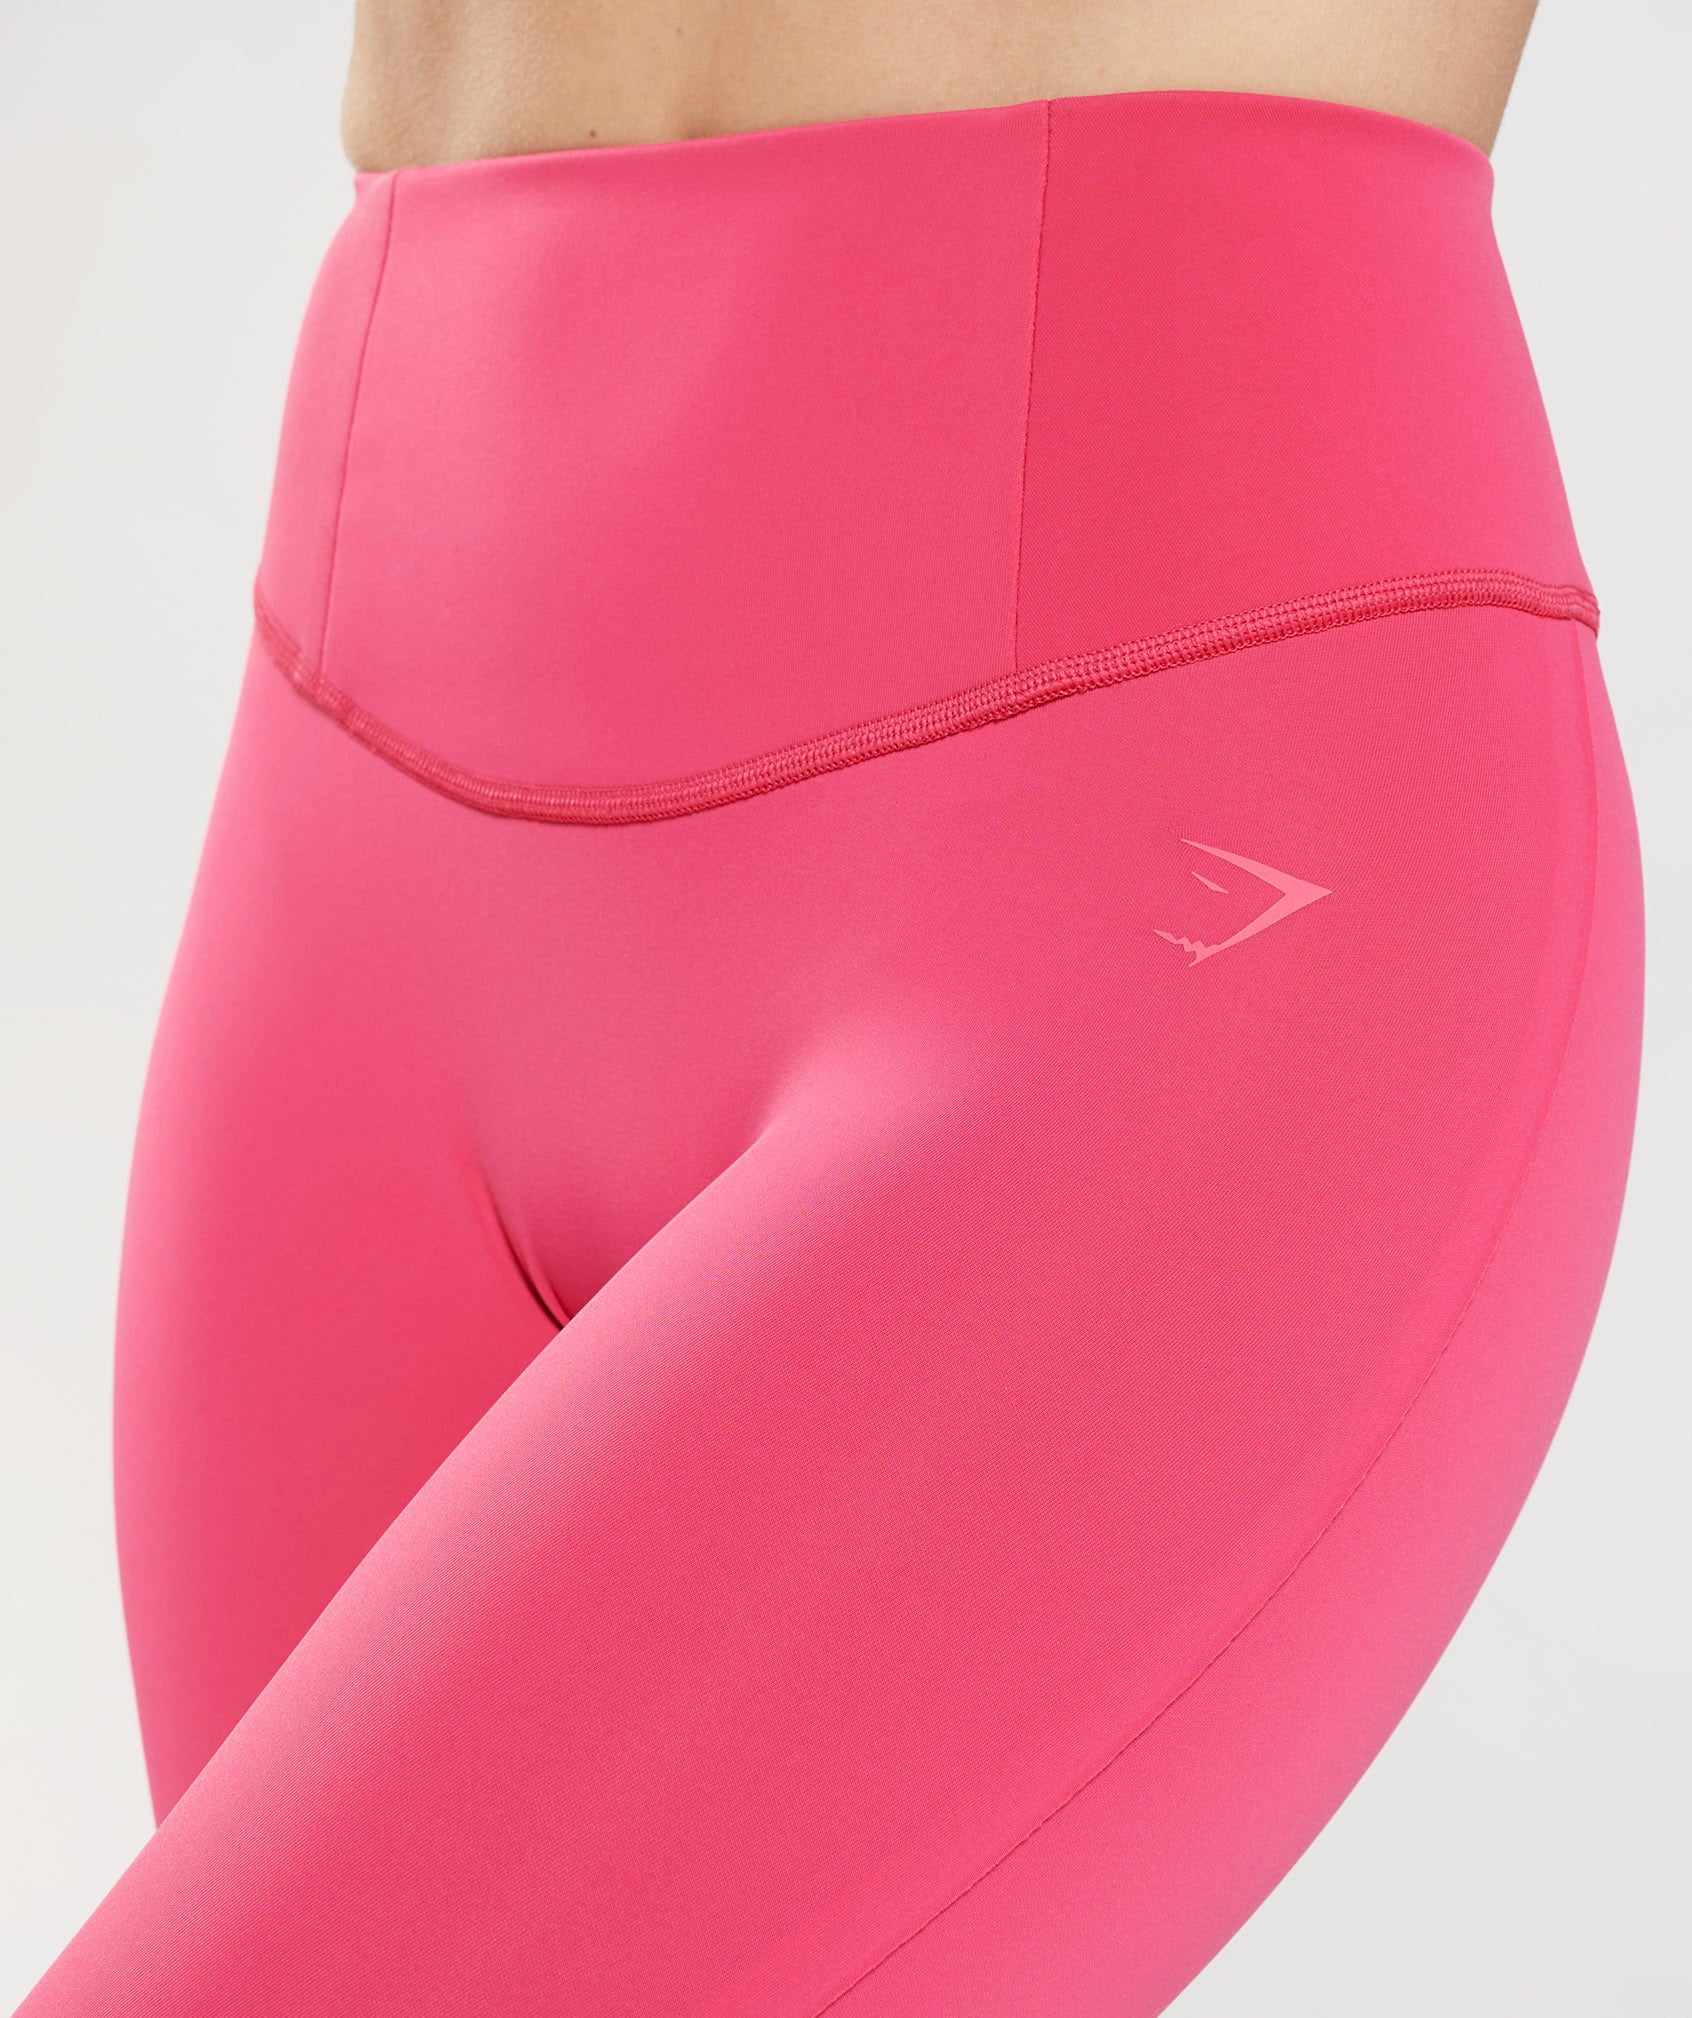 GYMSHARK Training Leggings (Pink, XS), Women's Fashion, Activewear